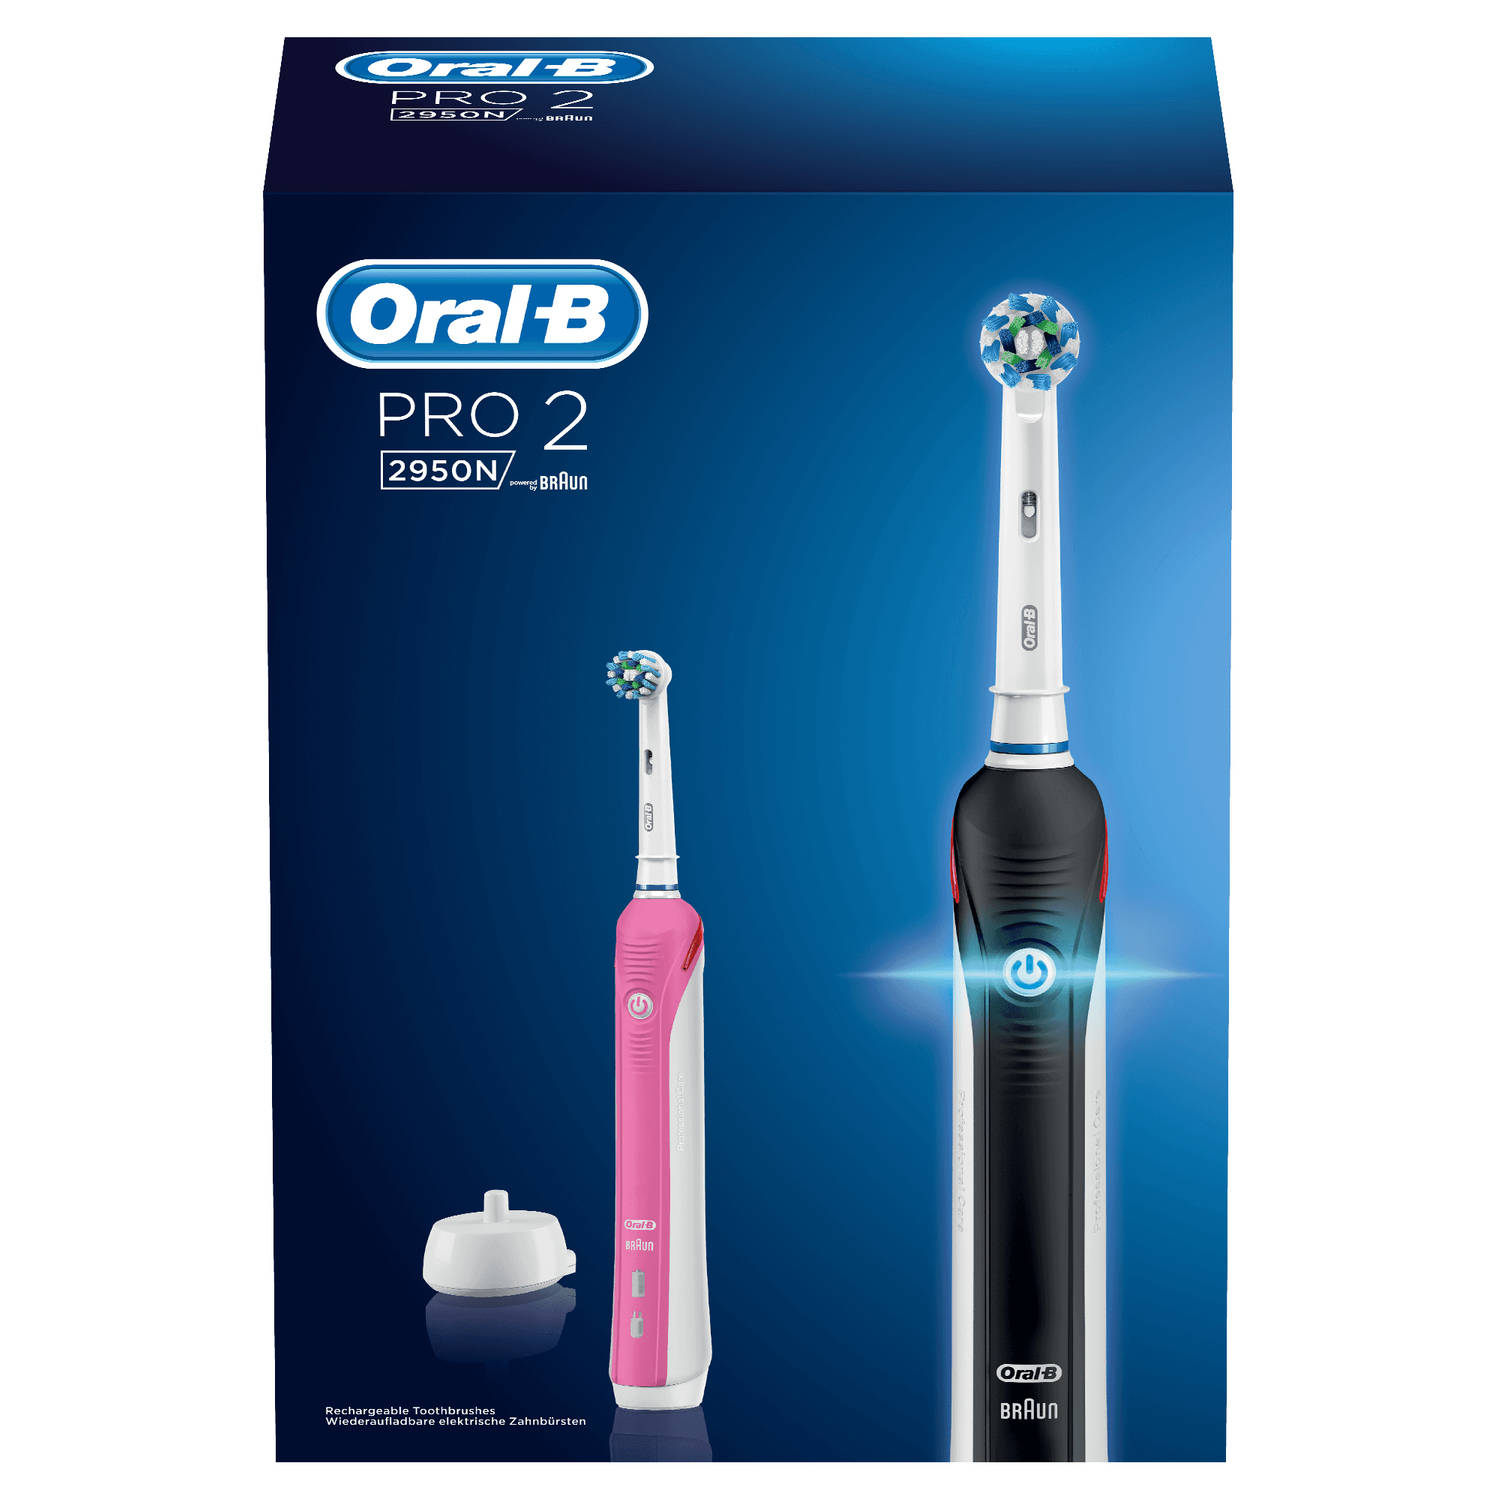 Afleiding Likken Informeer Oral-B elektrische tandenborstel Pro 2 2950N Duo zwart en roze - 2  poetsstanden | Blokker